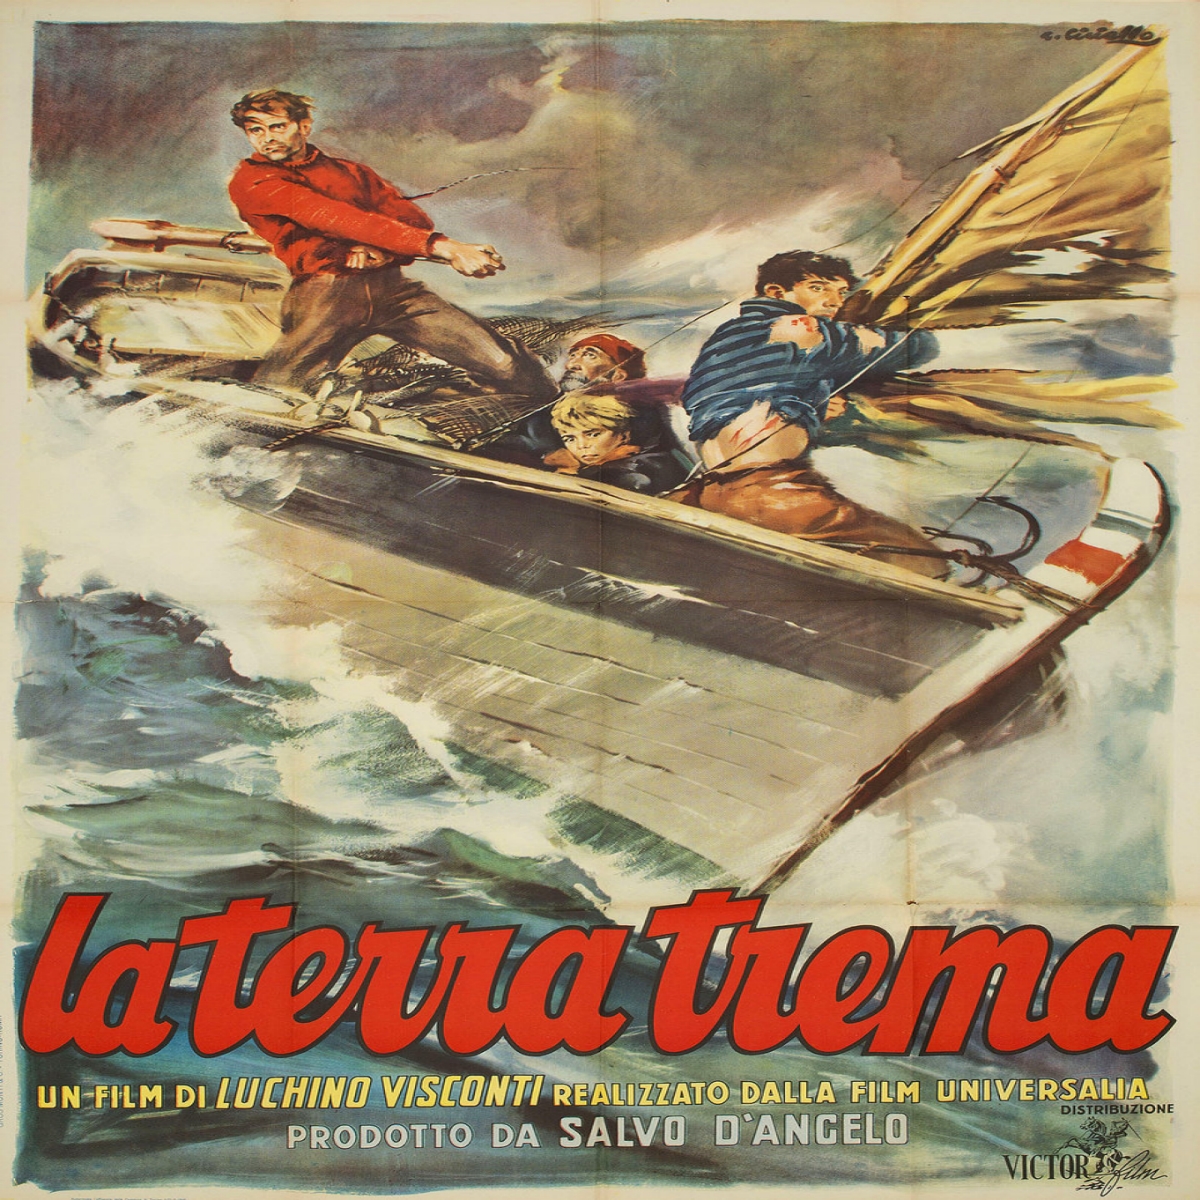 Italian poster for the film La terra trema.